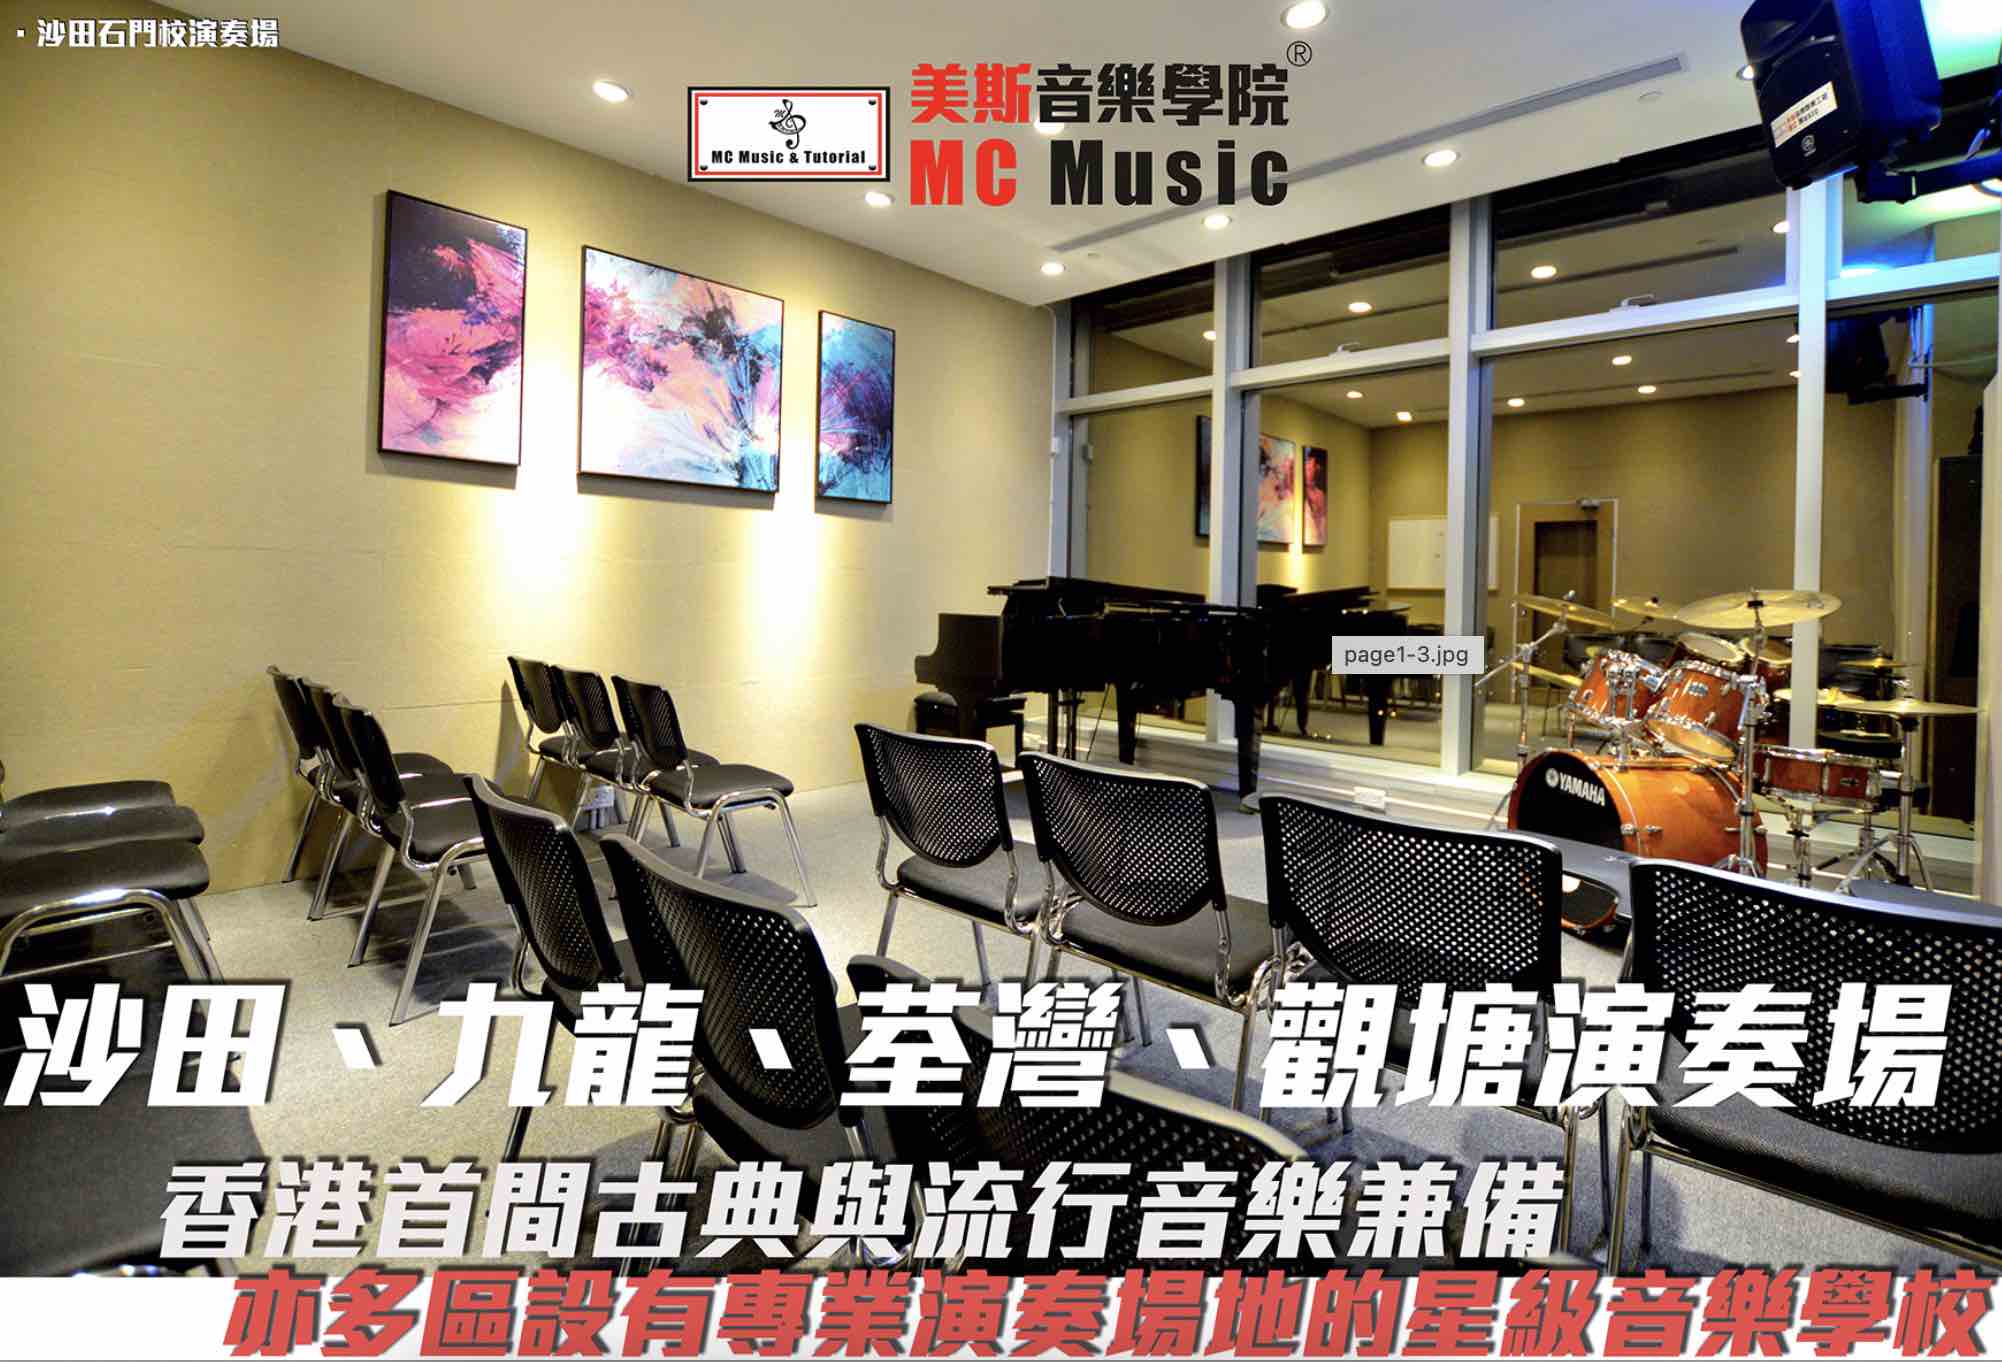 美斯音樂學院MC Music的特許經營香港區加盟店項目6